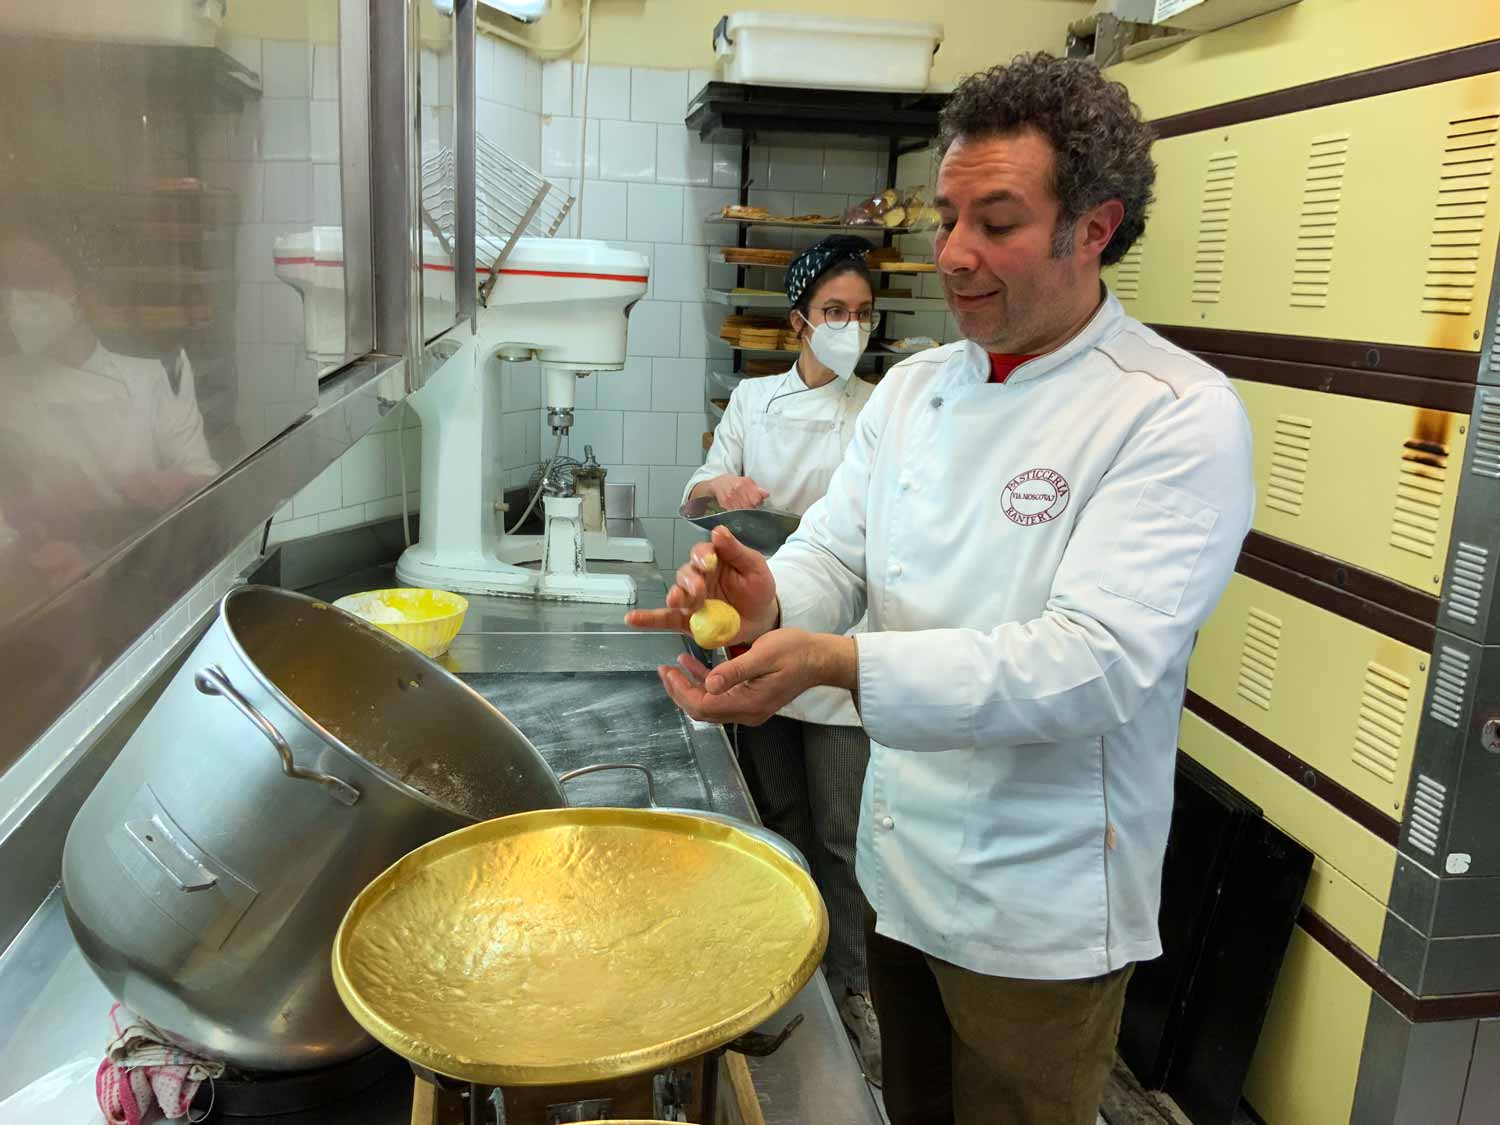 Maurizio Rana, proprietario della pasticceria Ranieri a Milano, prepara l'impasto del pan de mej